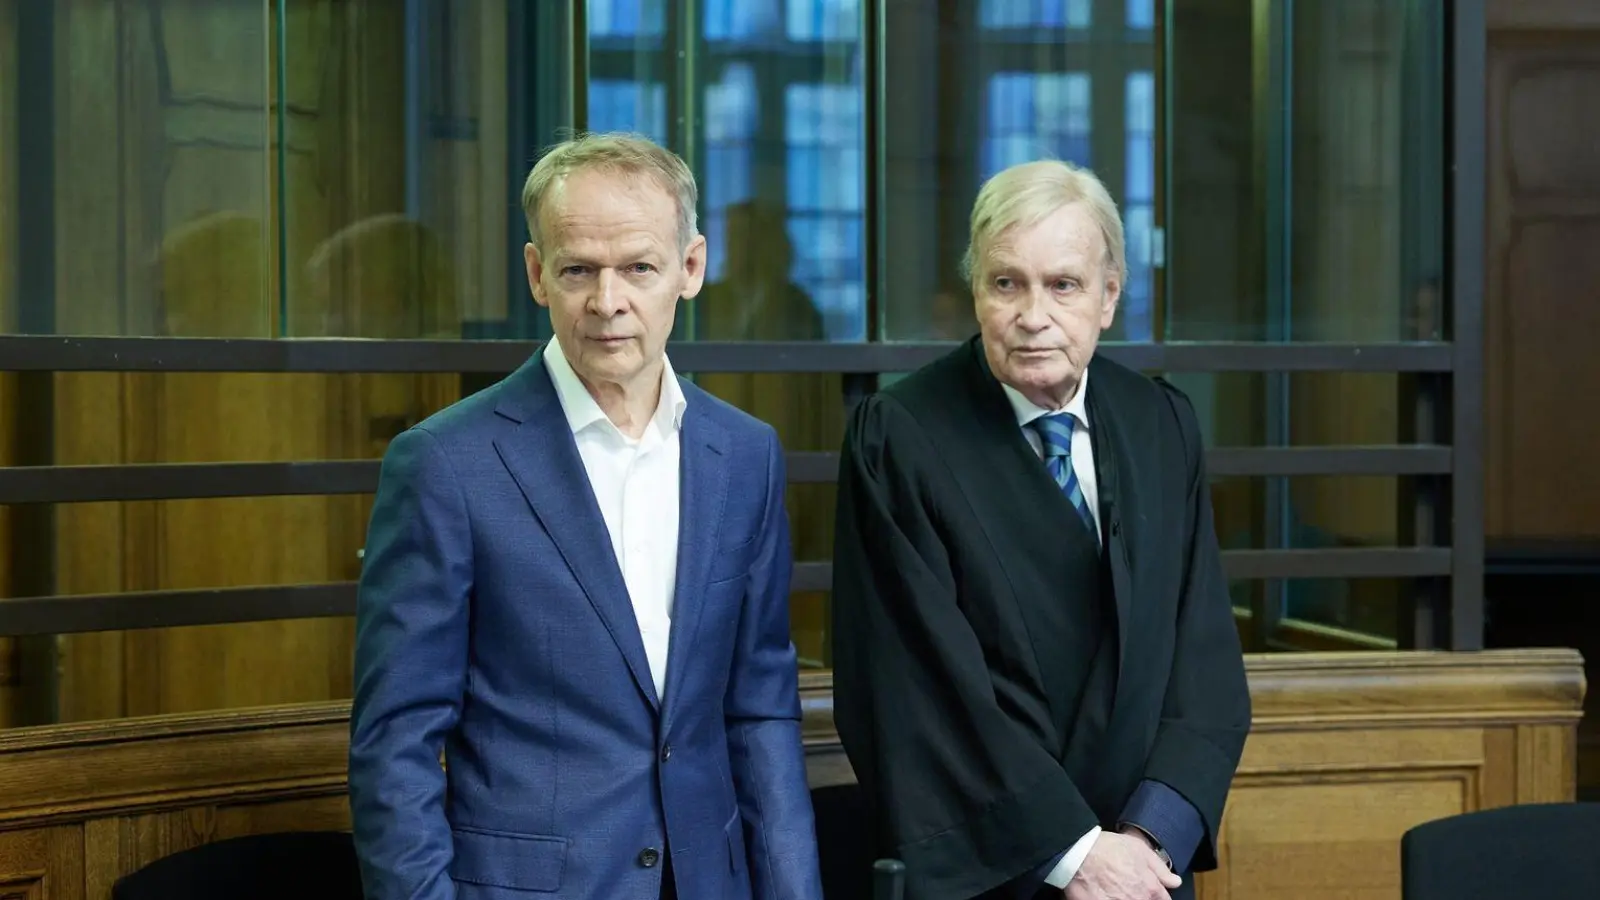 Der verurteilte Arzt Christoph Turowski (l) und sein Anwalt im Gerichtssaal 500 des Kriminalgerichts Moabit. (Foto: Jörg Carstensen/dpa)